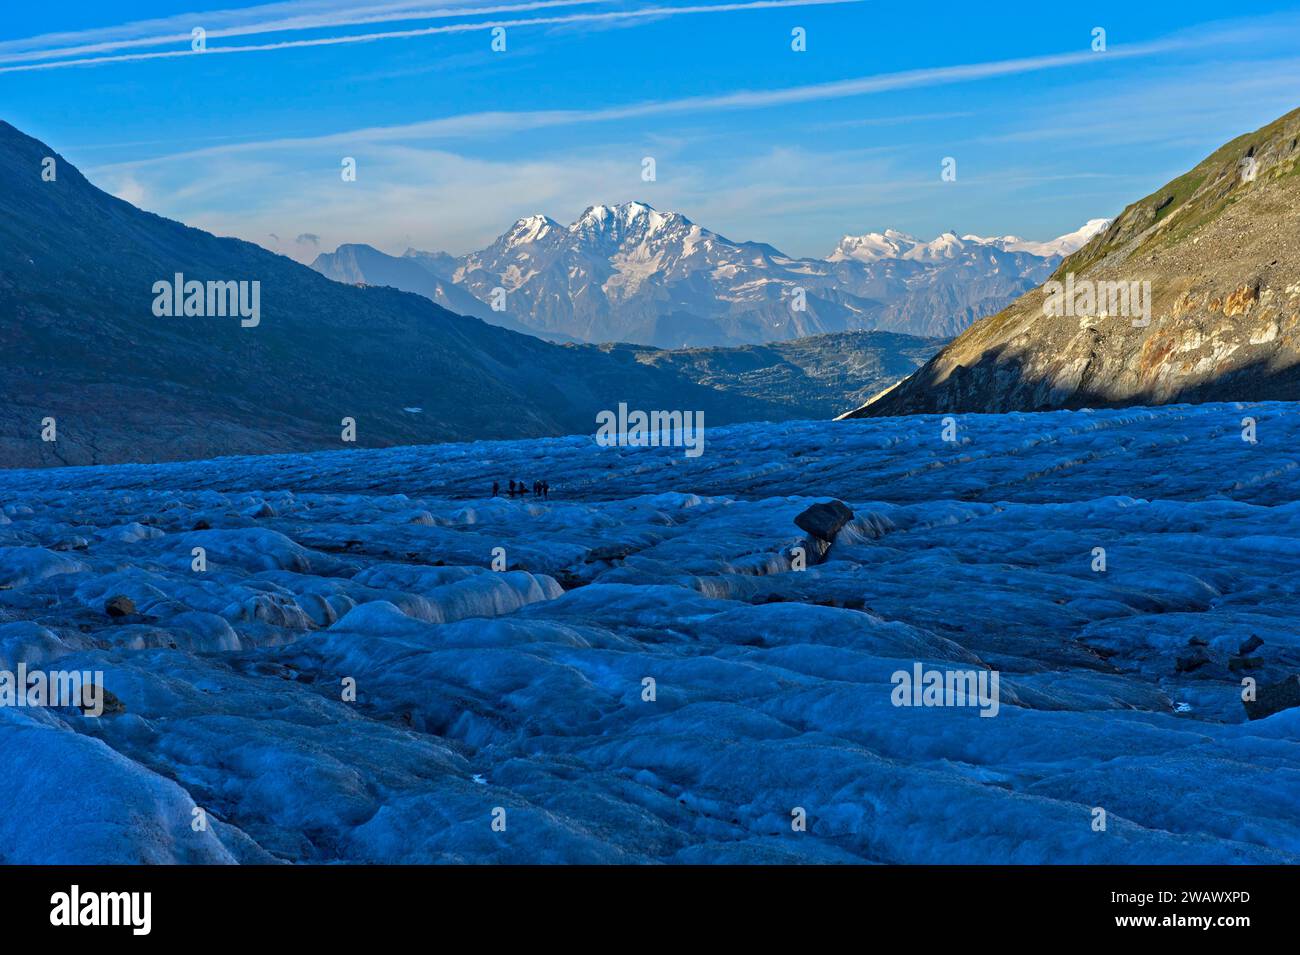 Vormittag auf dem zerklüfteten Eis des Großen Aletschgletschers, Blick auf den Bergrücken der Walliser Alpen, UNESCO-Weltkulturerbe Schweizer Alpen Jungfrau-Aletsch Stockfoto